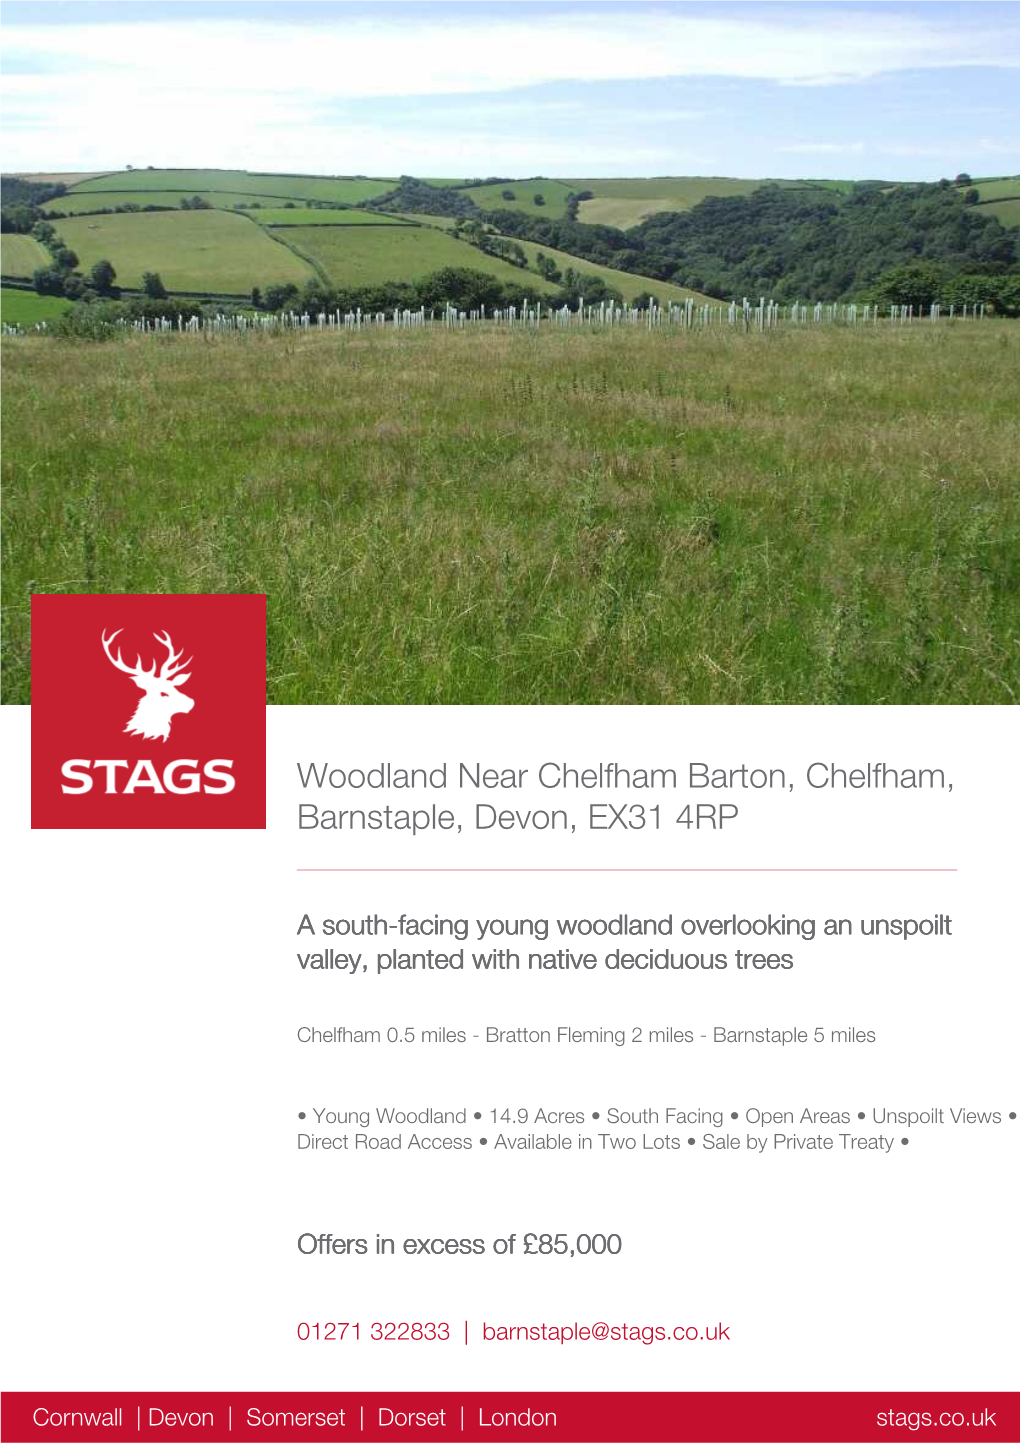 Woodland Near Chelfham Barton, Chelfham, Barnstaple, Devon, EX31 4RP